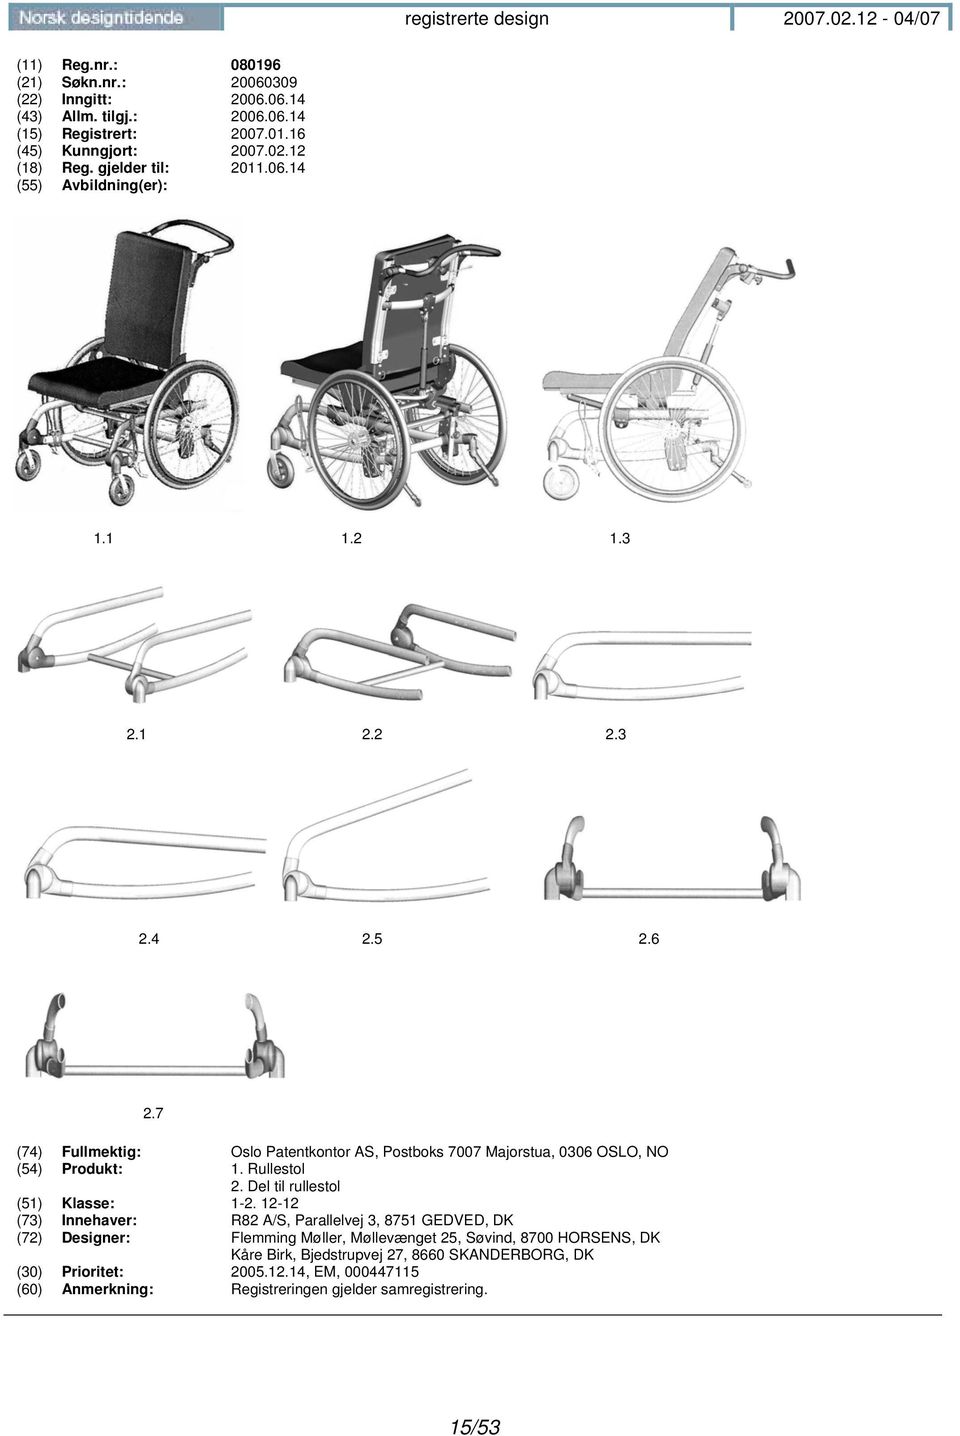 Del til rullestol (51) Klasse: 1-2.